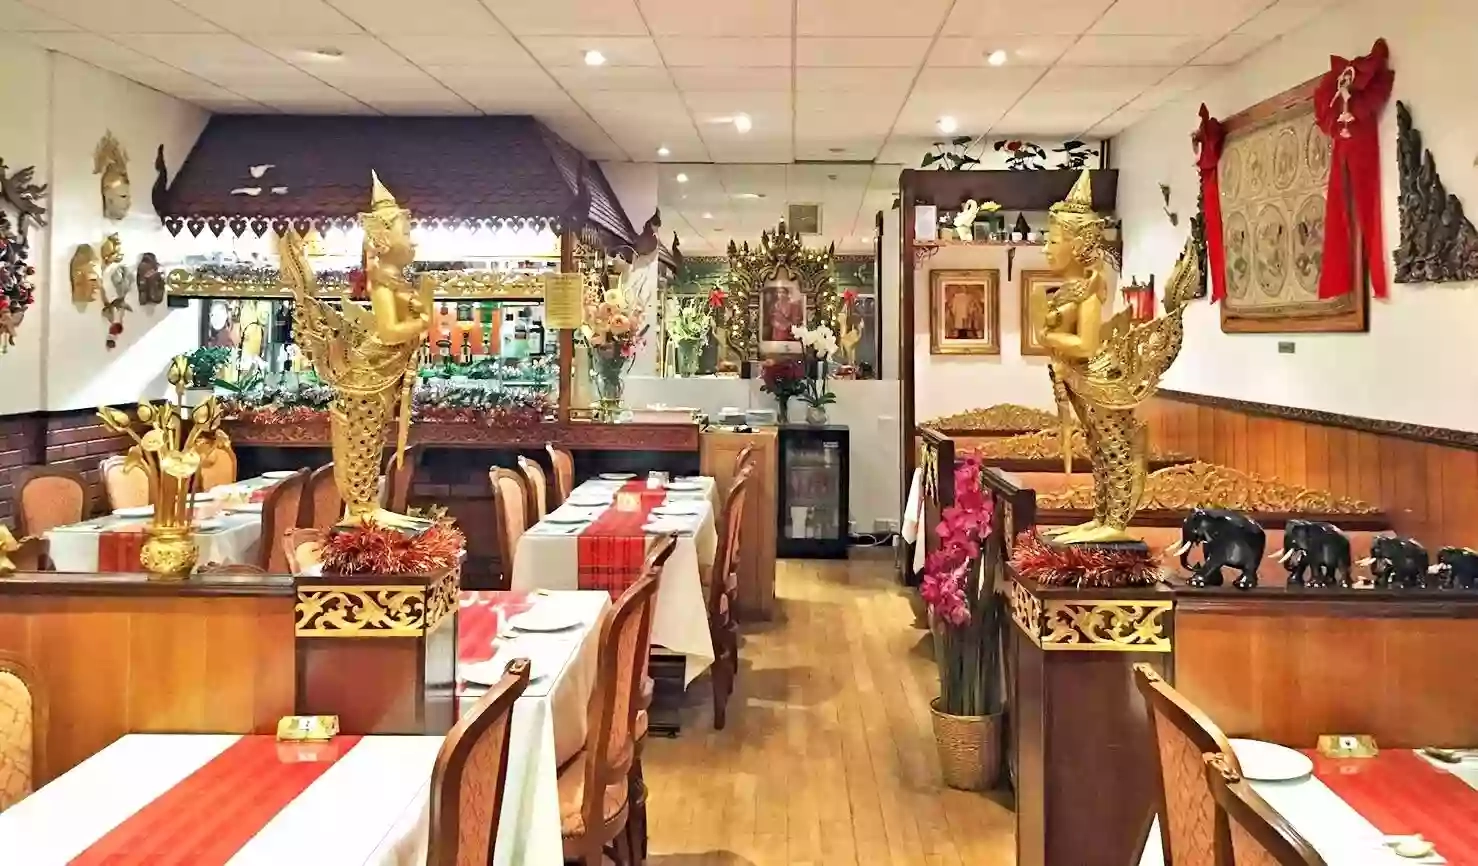 Siam Garden Thai Restaurant